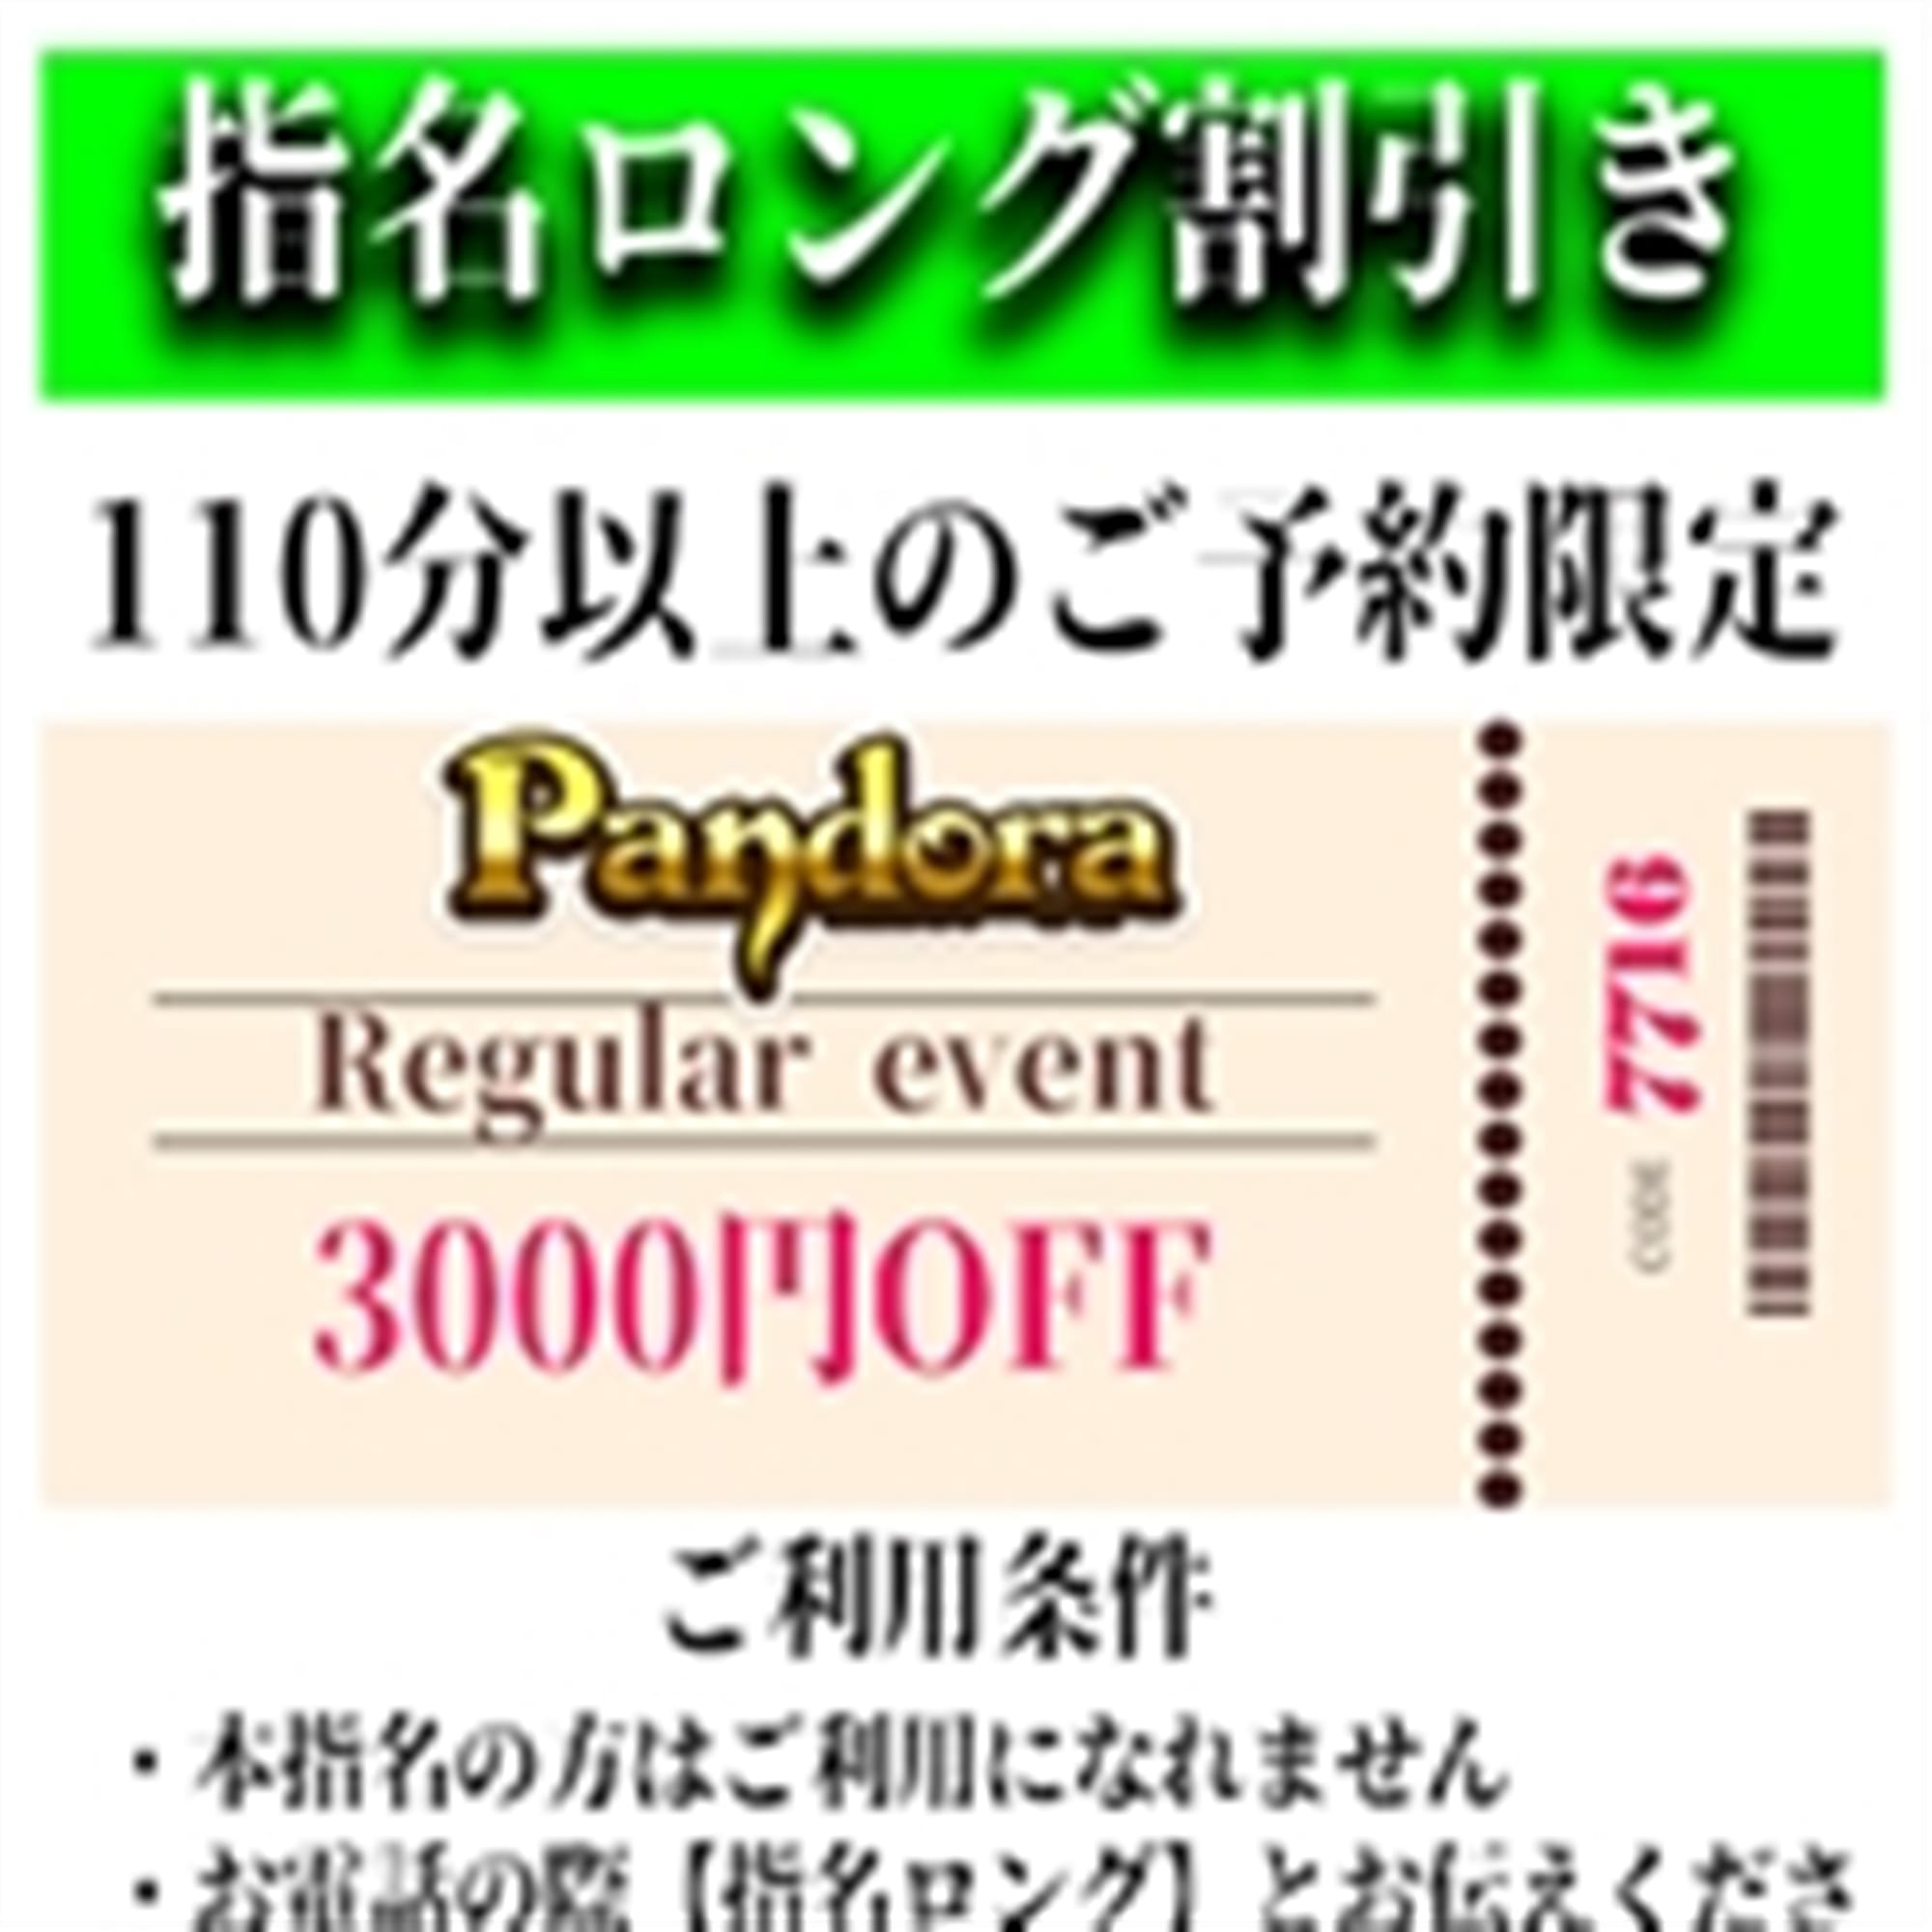 「ご指名のお客様も遊べるロングコース割引」04/20(土) 02:10 | Pandora(パンドラ)新潟のお得なニュース